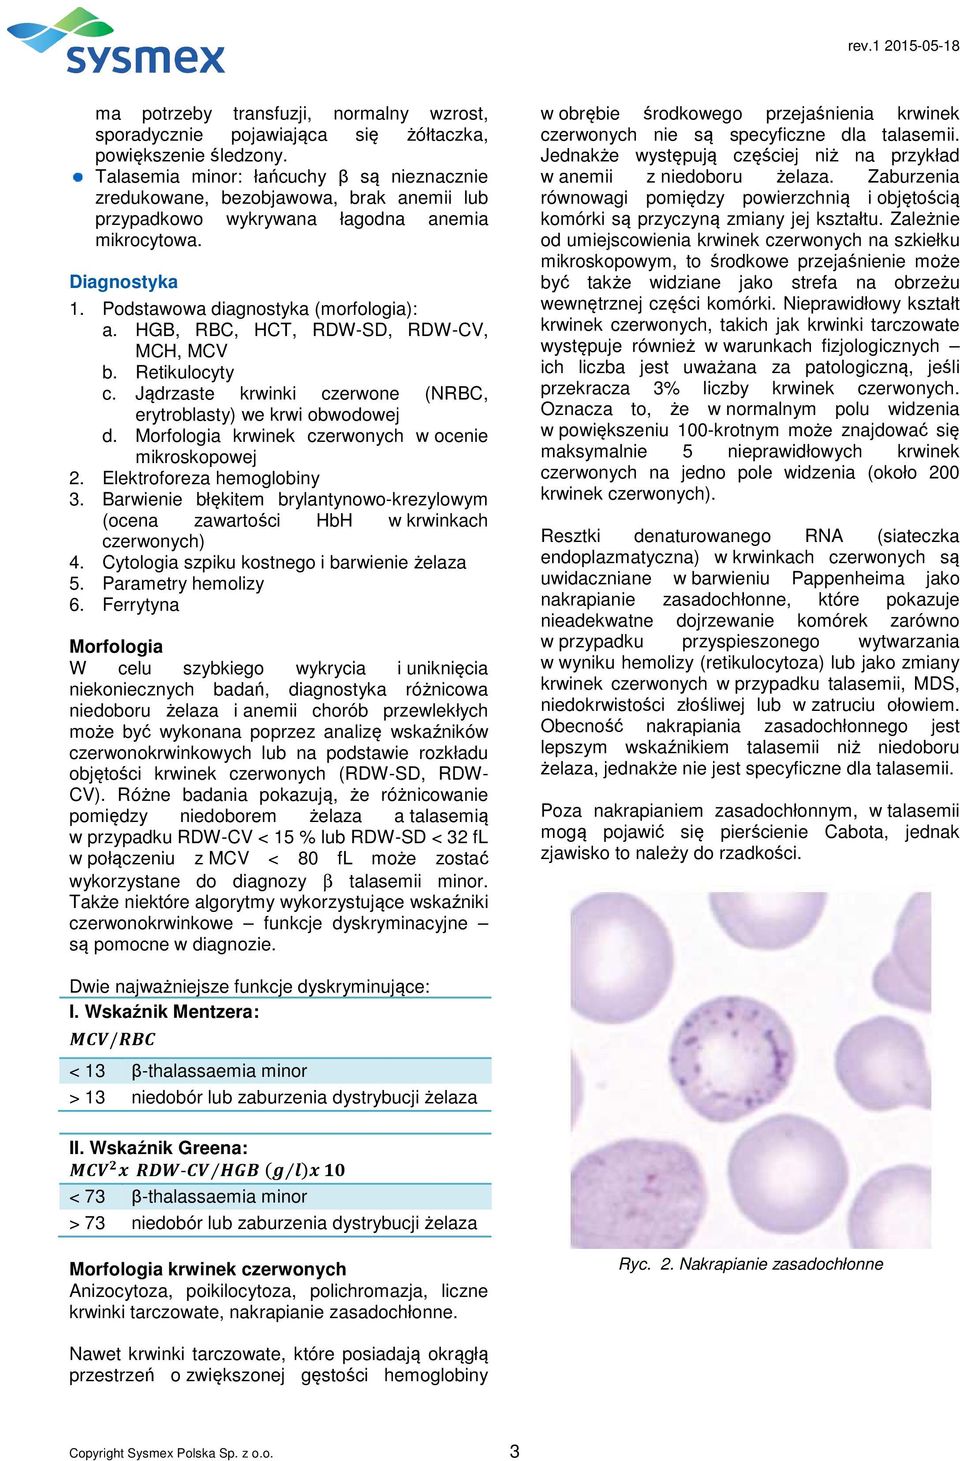 HGB, RBC, HCT, RDW-SD, RDW-CV, MCH, MCV b. Retikulocyty c. Jądrzaste krwinki czerwone (NRBC, erytroblasty) we krwi obwodowej d. Morfologia krwinek czerwonych w ocenie mikroskopowej 2.